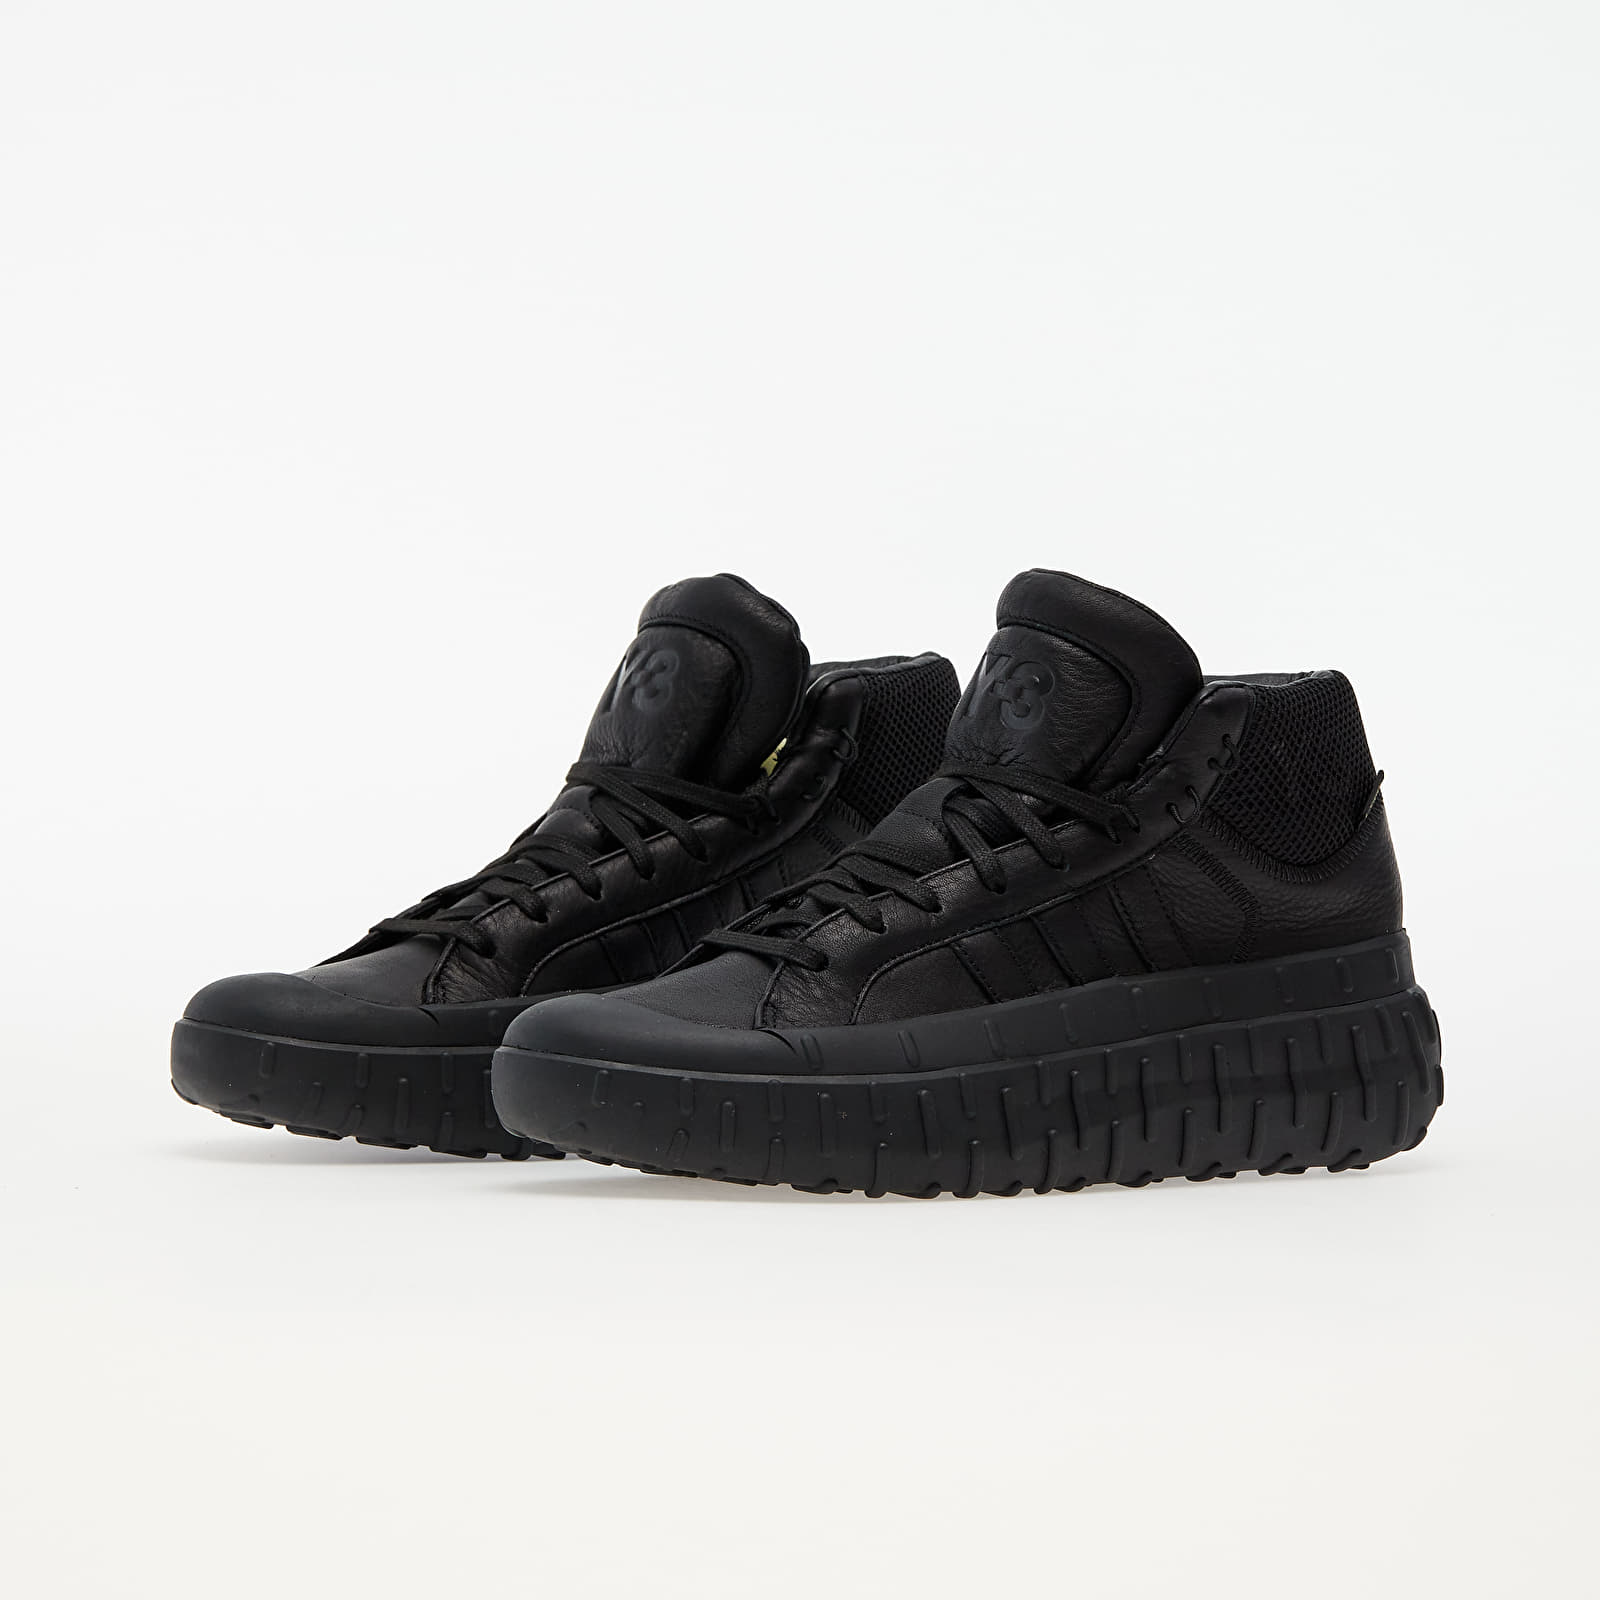 Men's shoes Y-3 GR.1P High Gore-Tex Black/ Black/ Black | Footshop